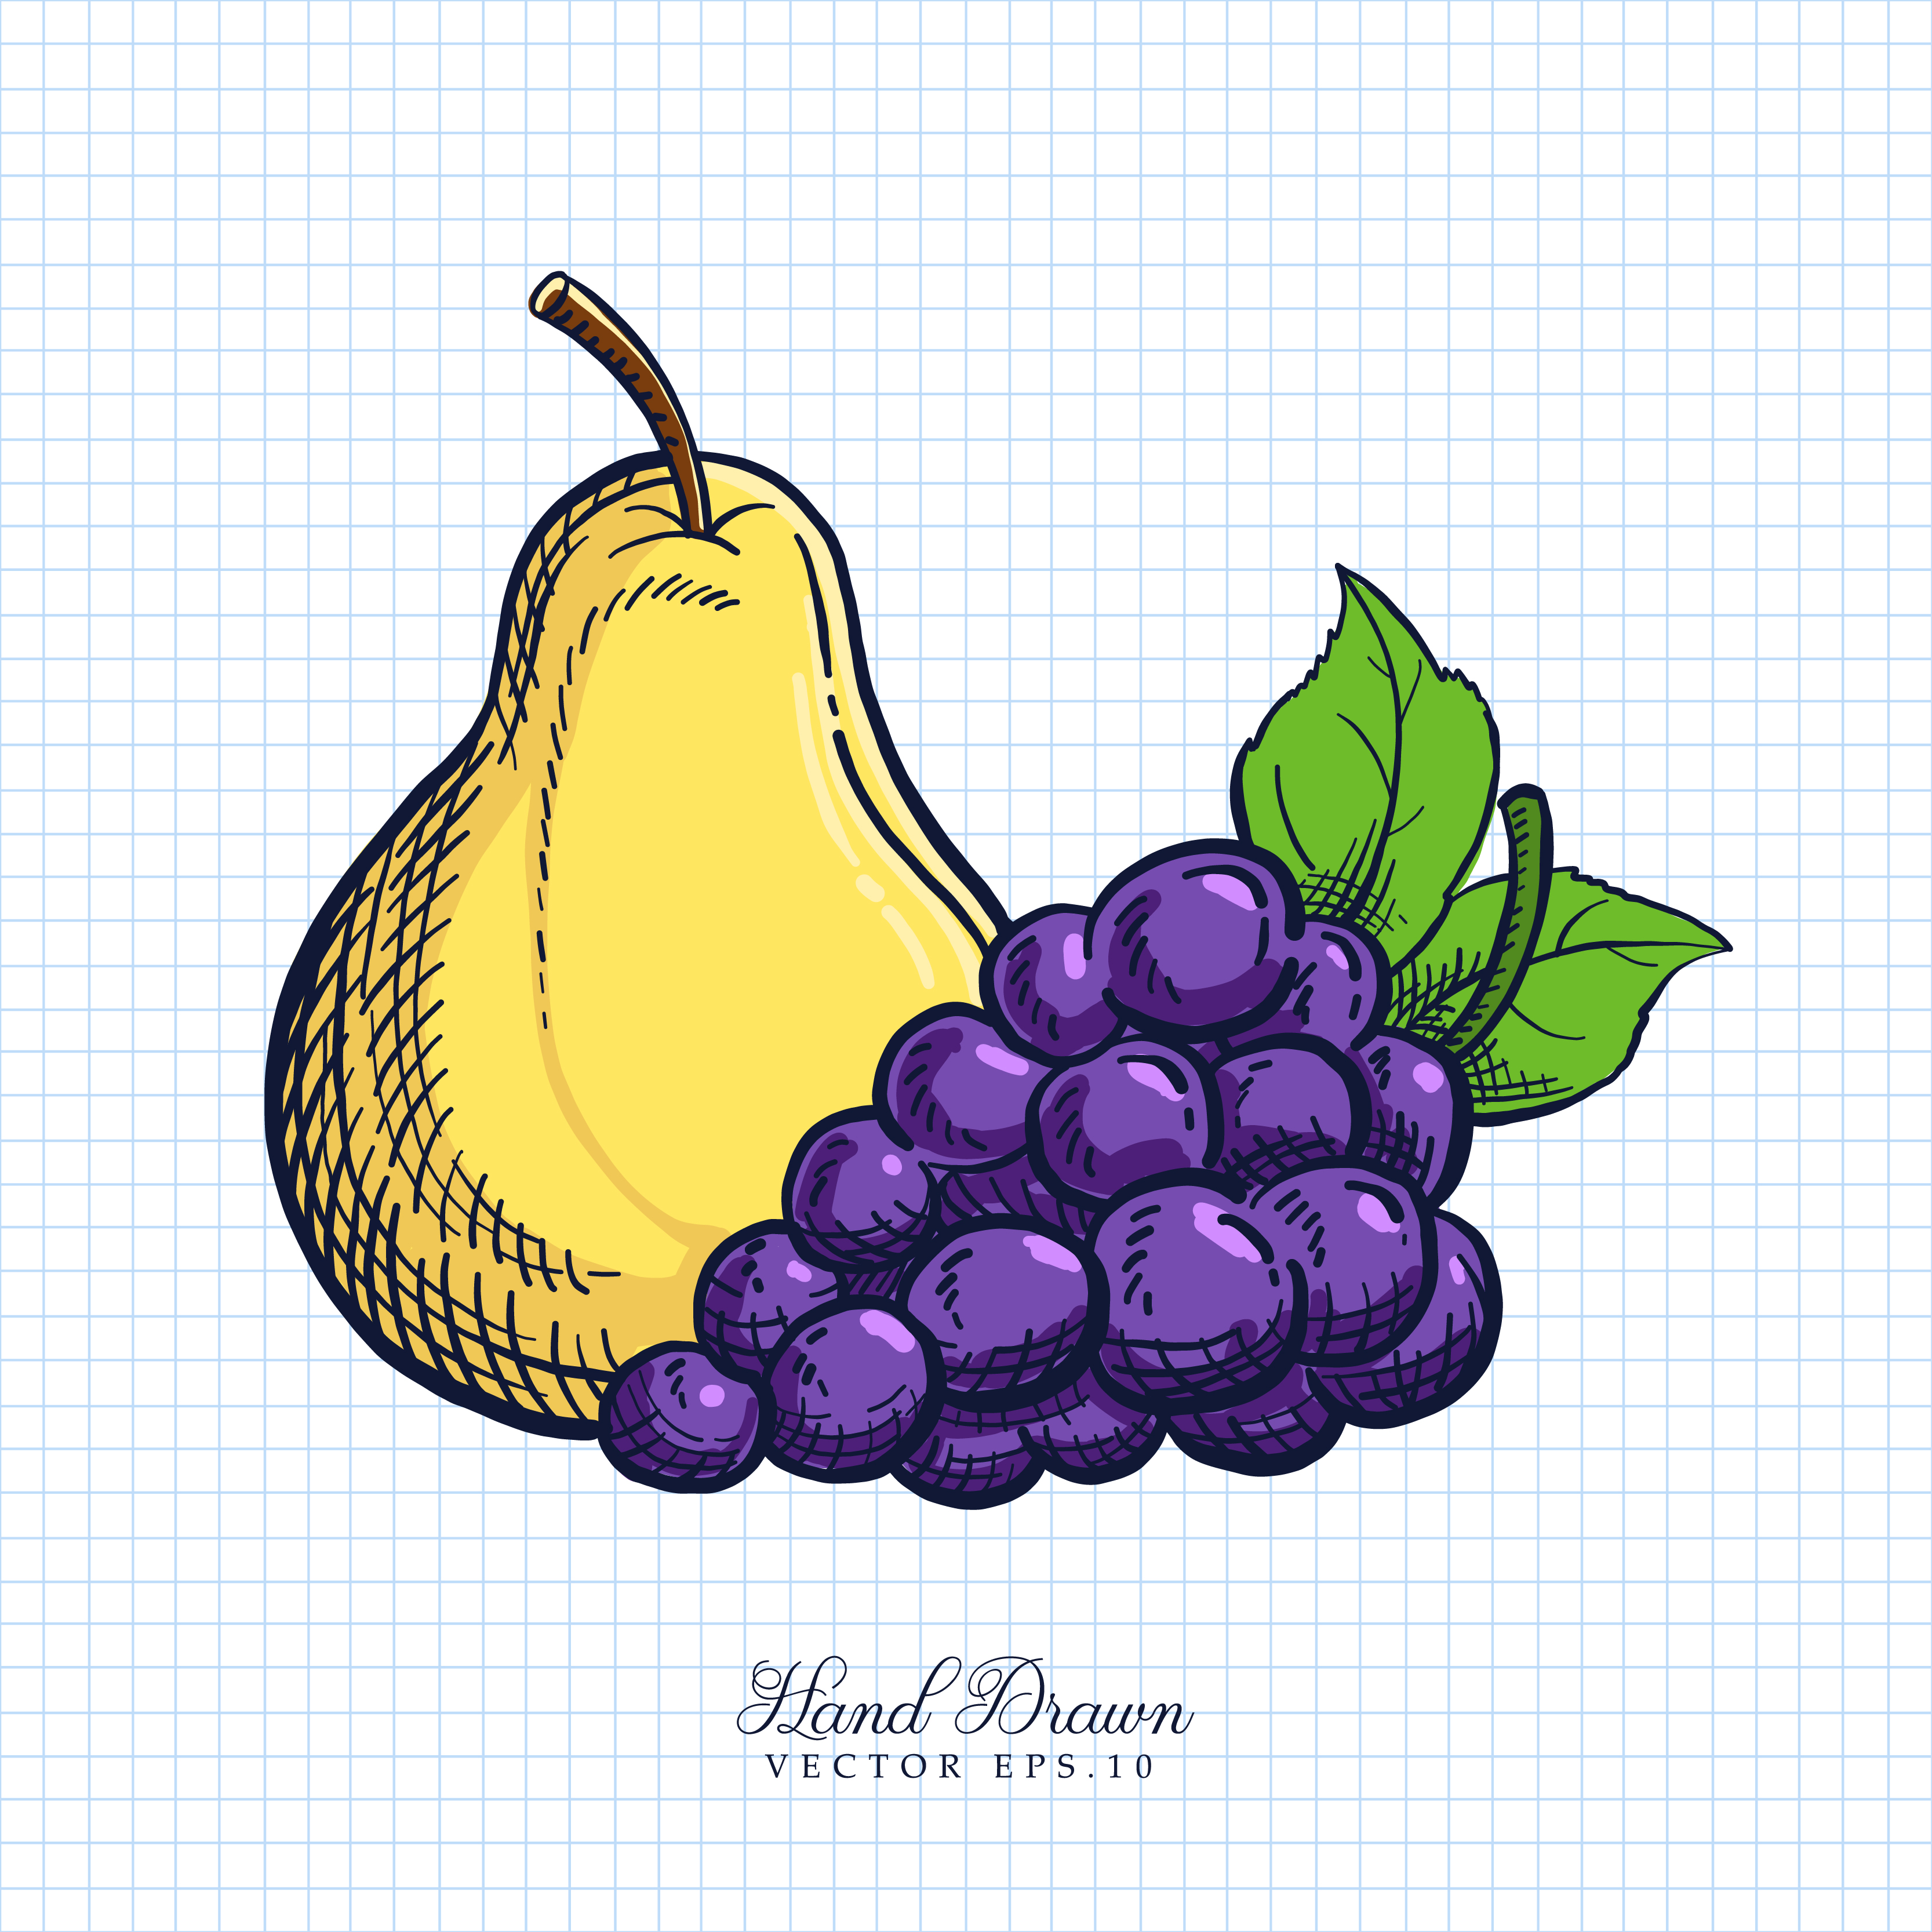 Grape pear. Натюрморт с грушами и виноградом. Натюрморт яблоко груша виноград. Цветные векторные рисунки натюрморт. Груша и виноград.